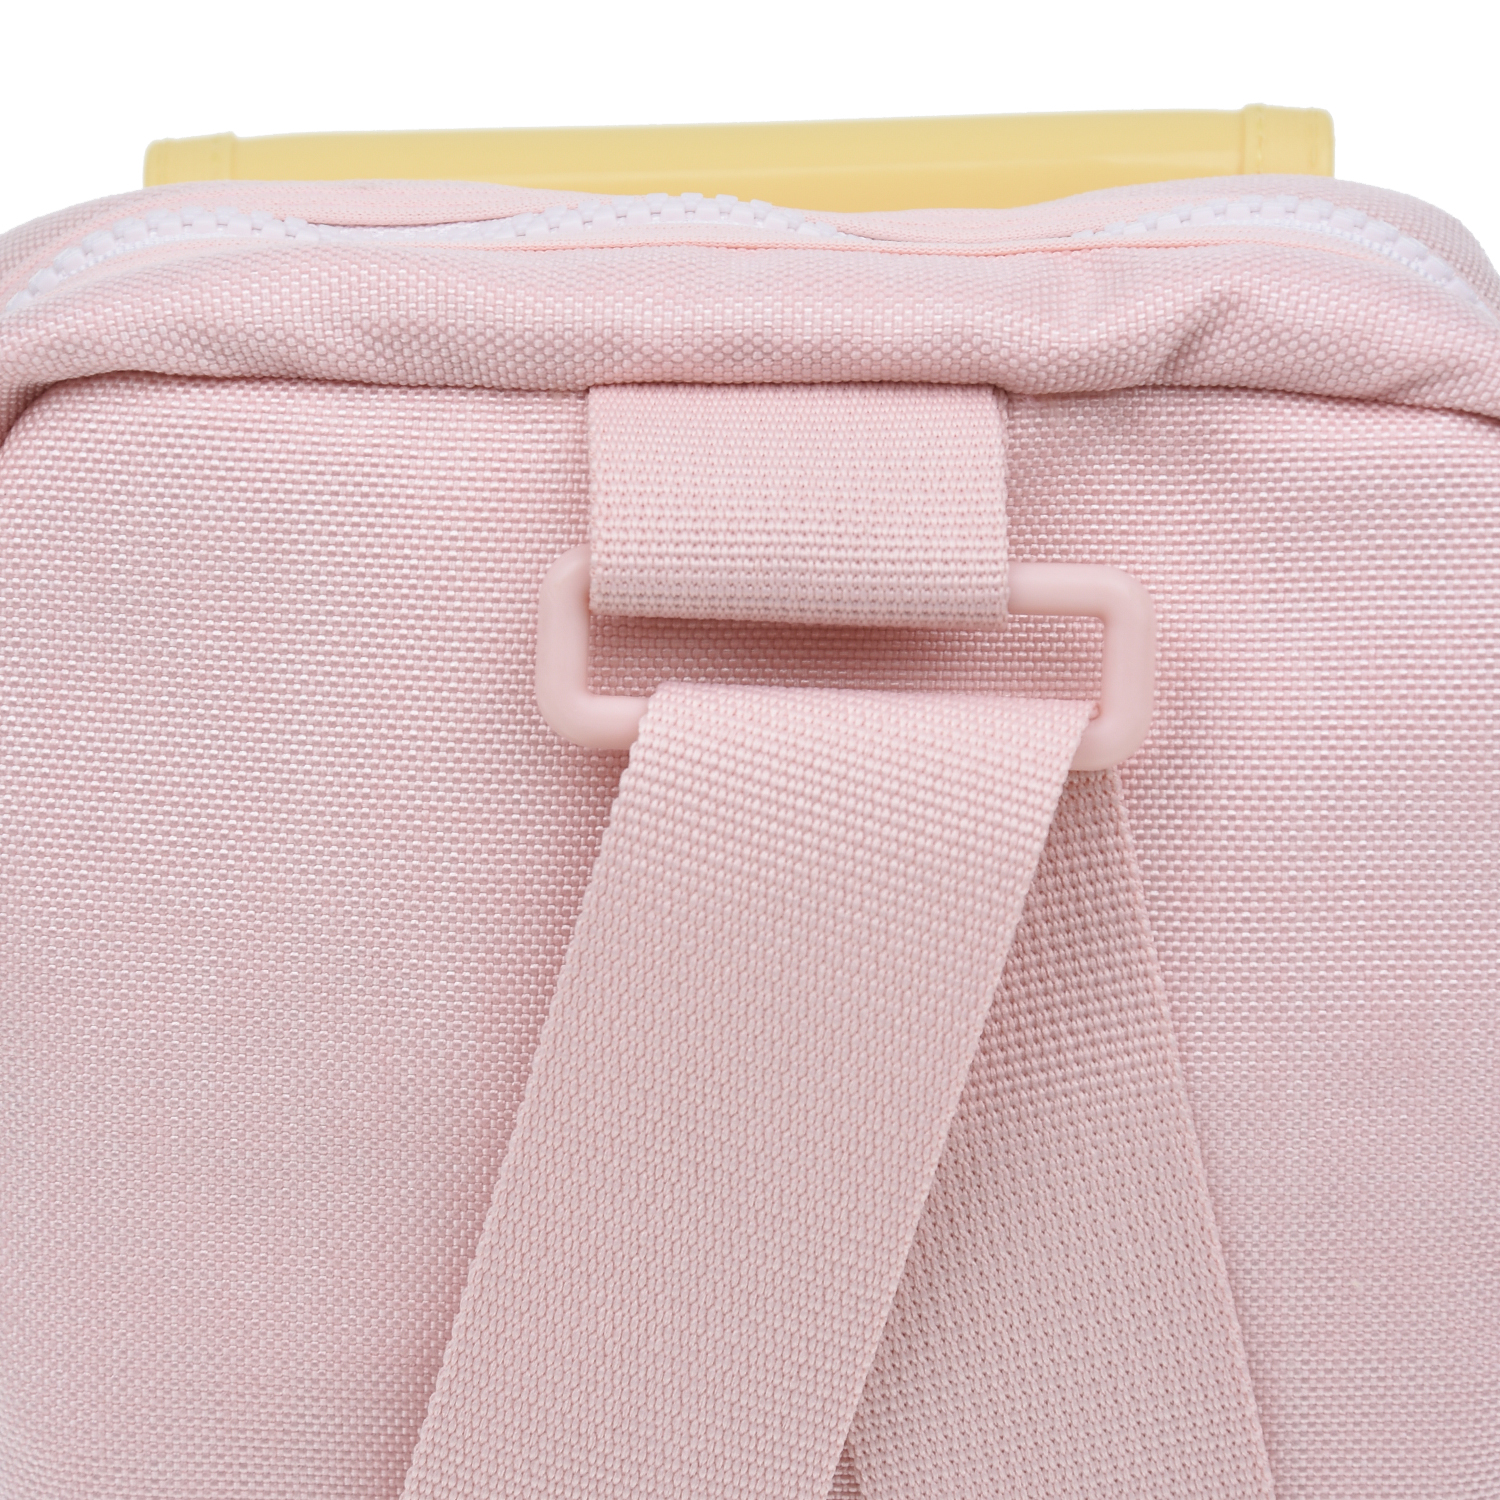 Розовый рюкзак 10х20х25 см Melissa детский, размер unica - фото 7